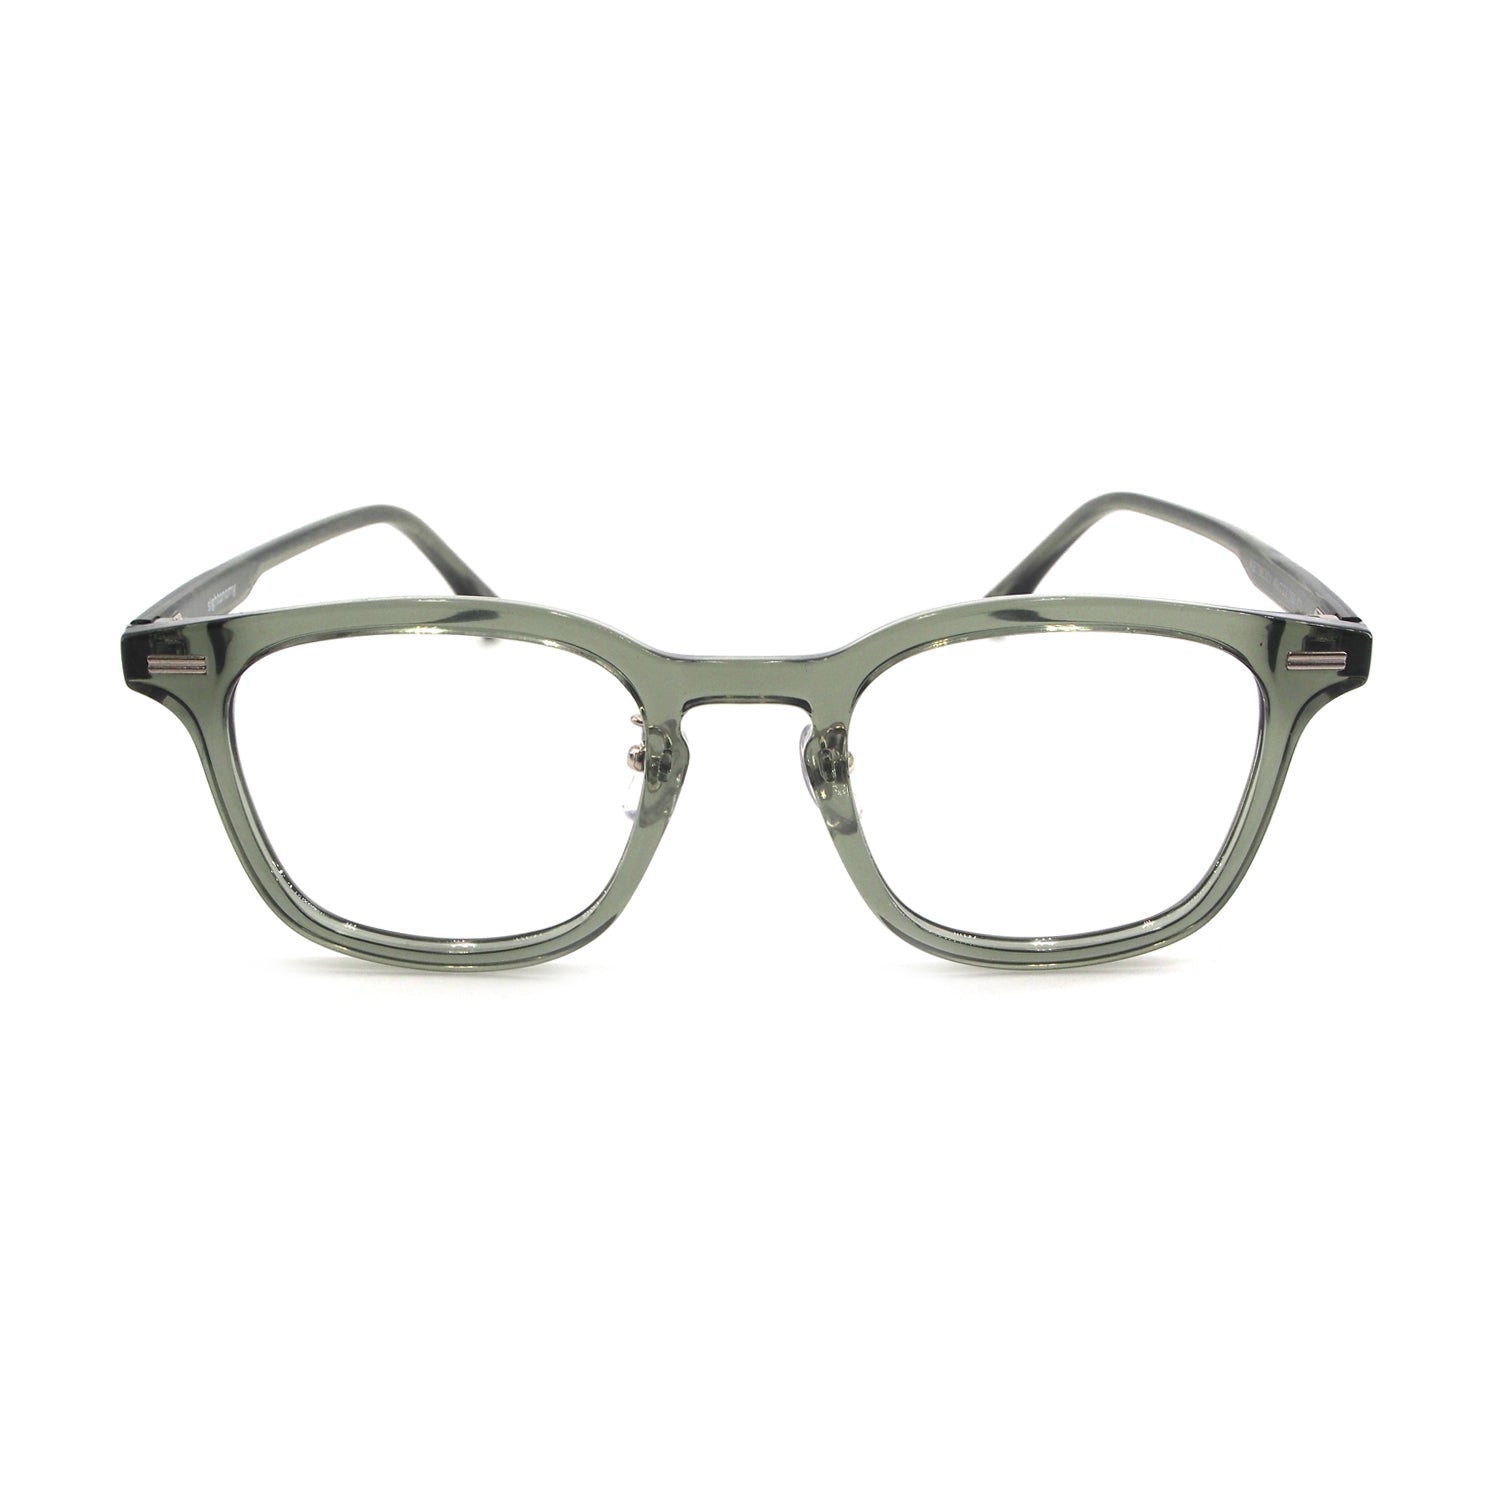 Bashira in Moss Eyeglasses - sightonomy